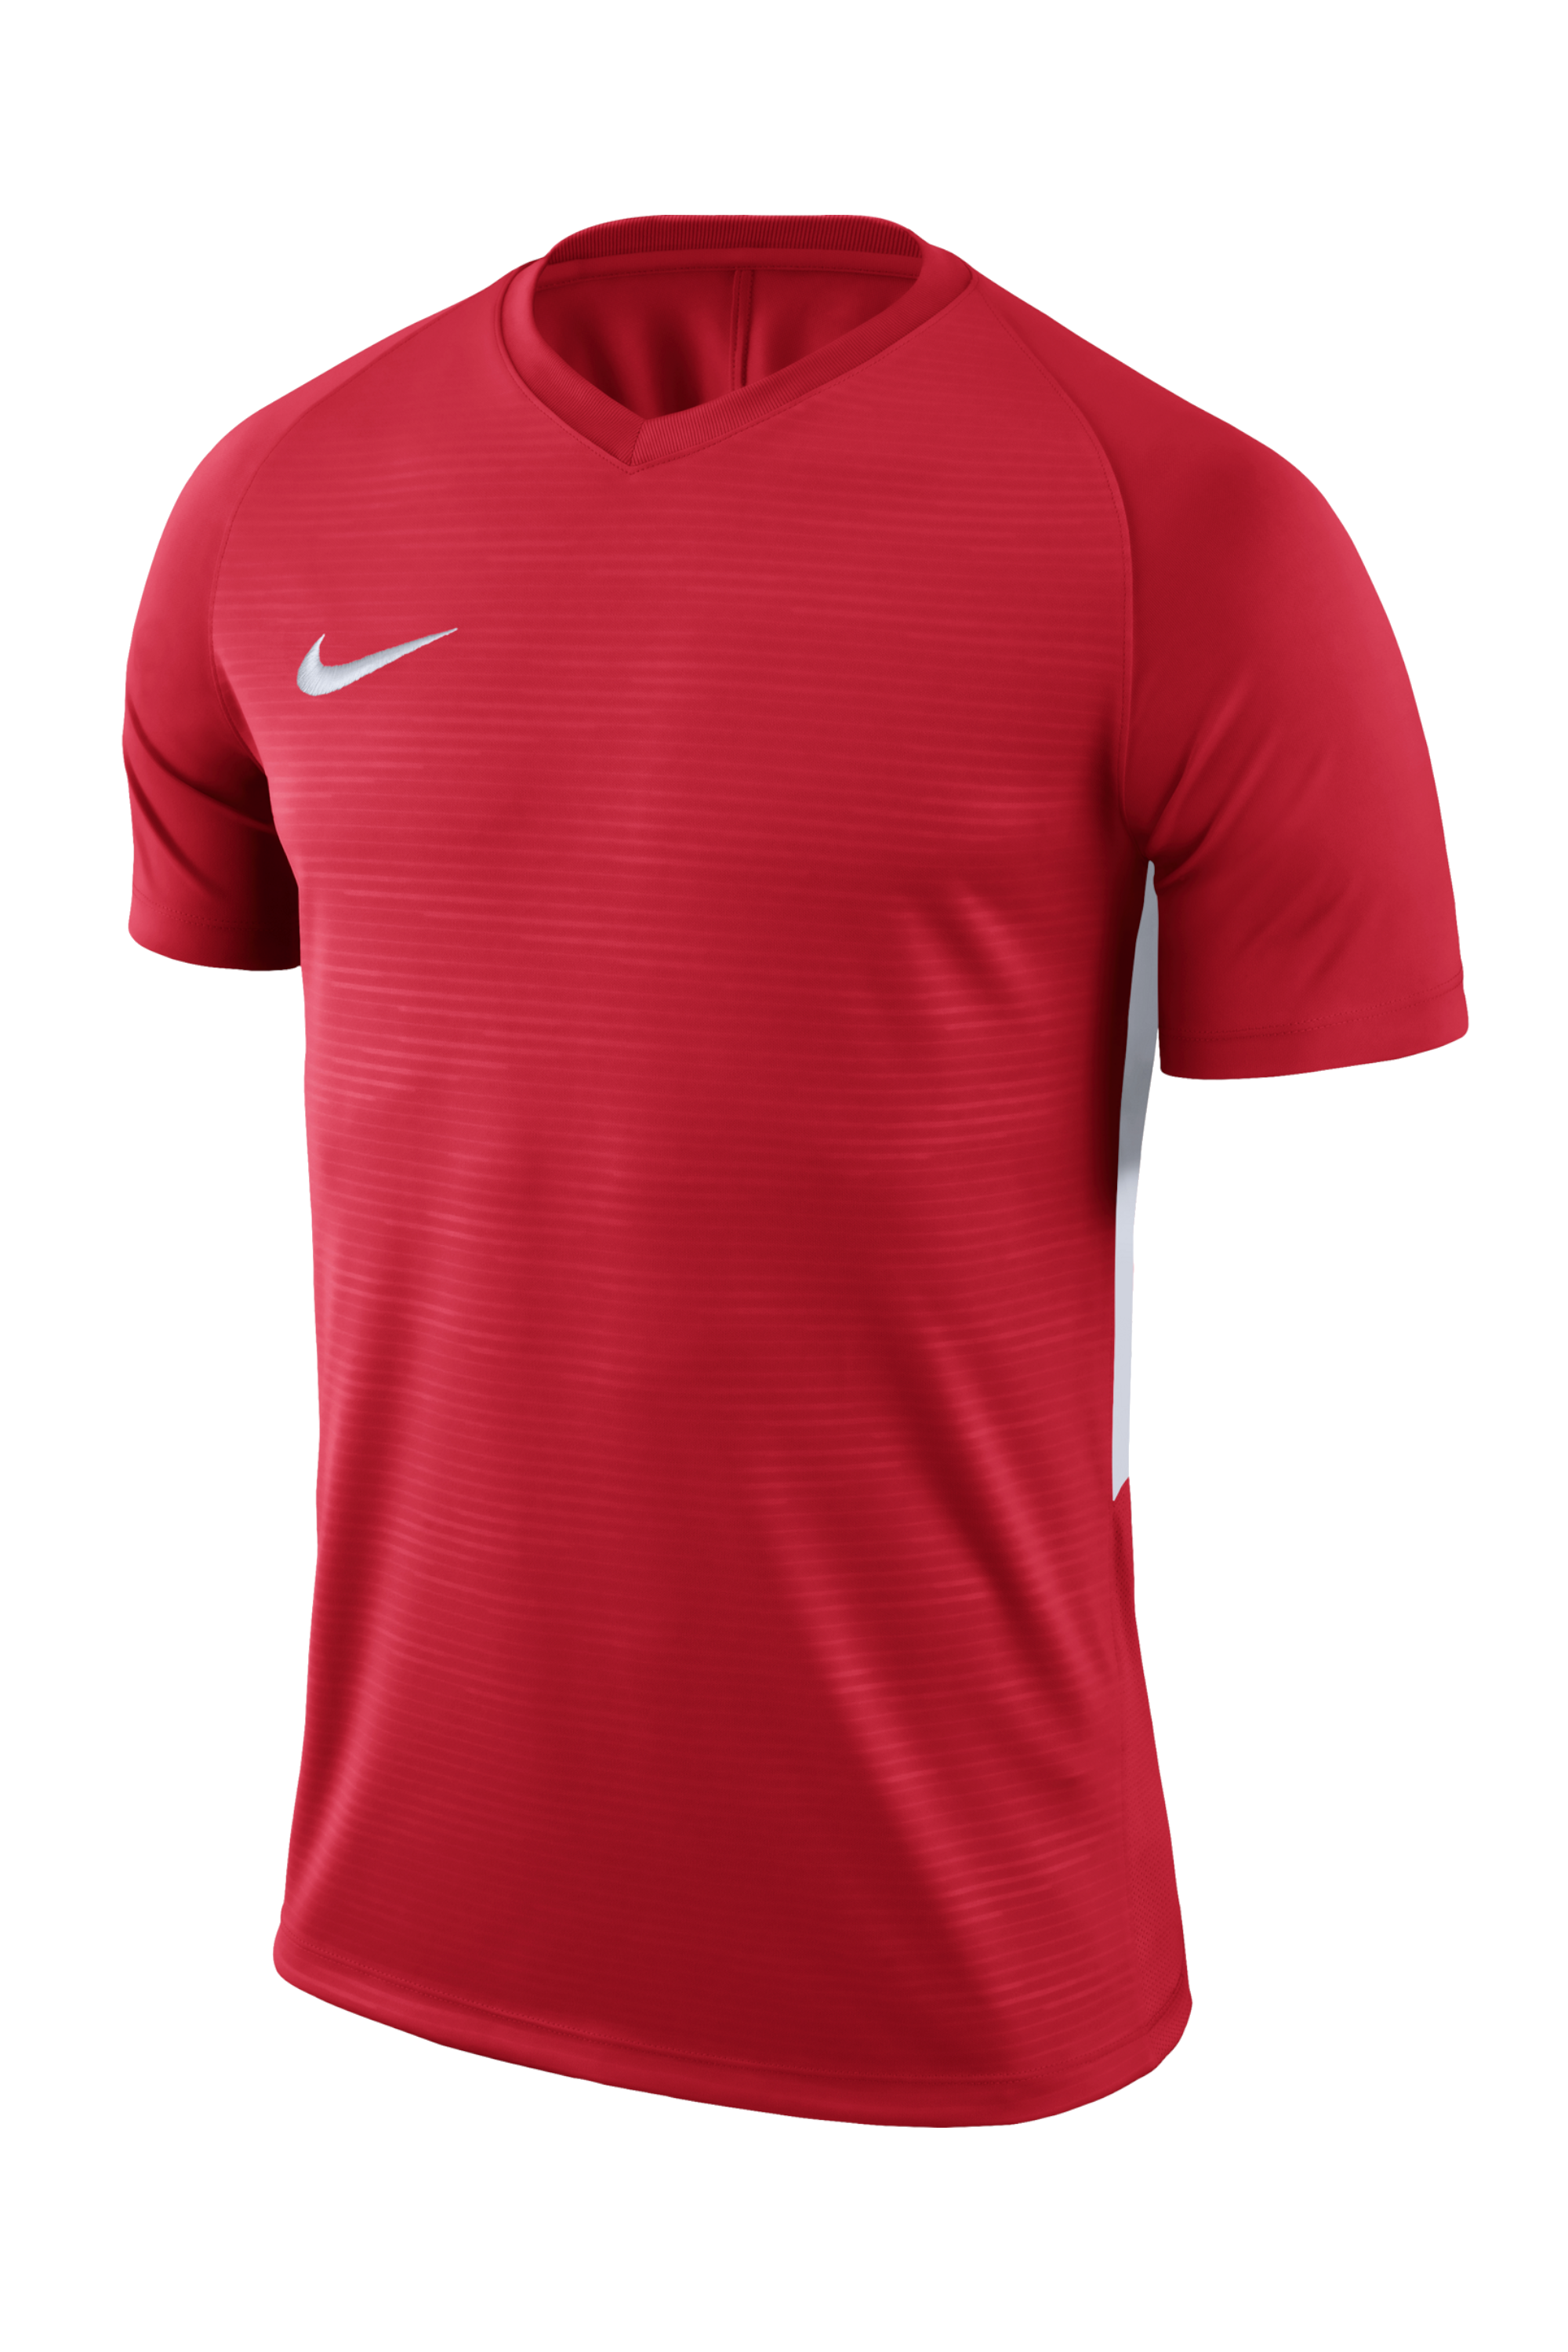 Football Shirt Nike Dry Tiempo Premier 